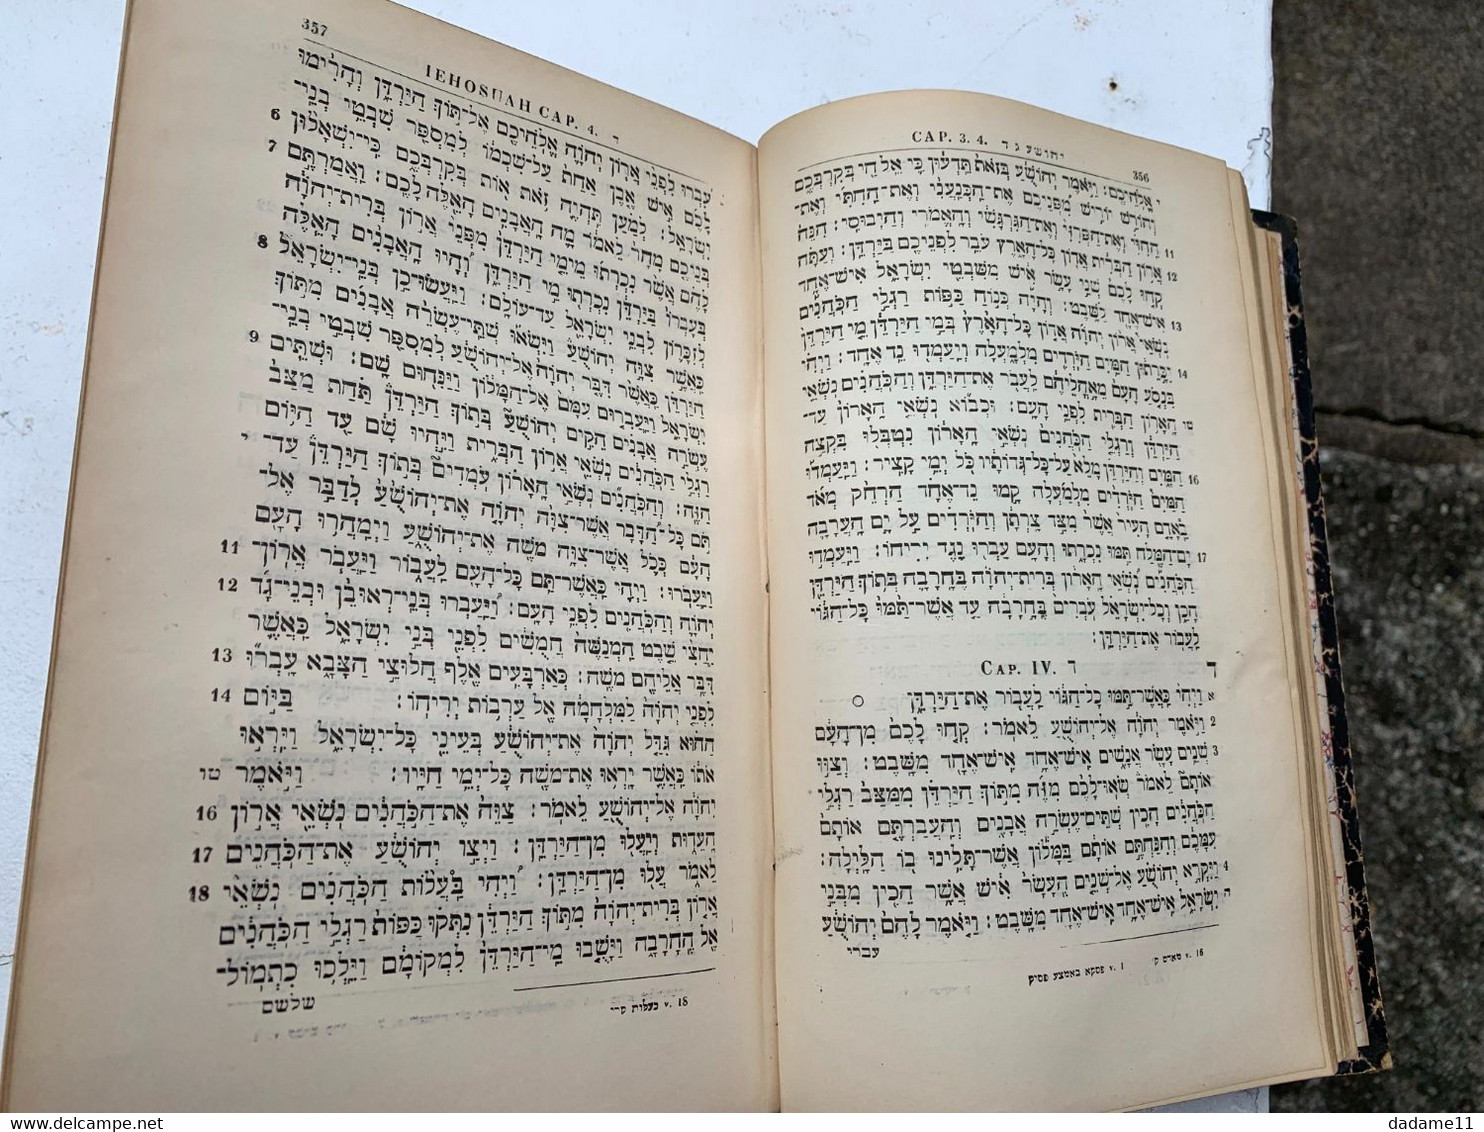 Biblia Hebraica Secundum Editiones Augustus Hahn  Lipsiae 1896 - Judentum